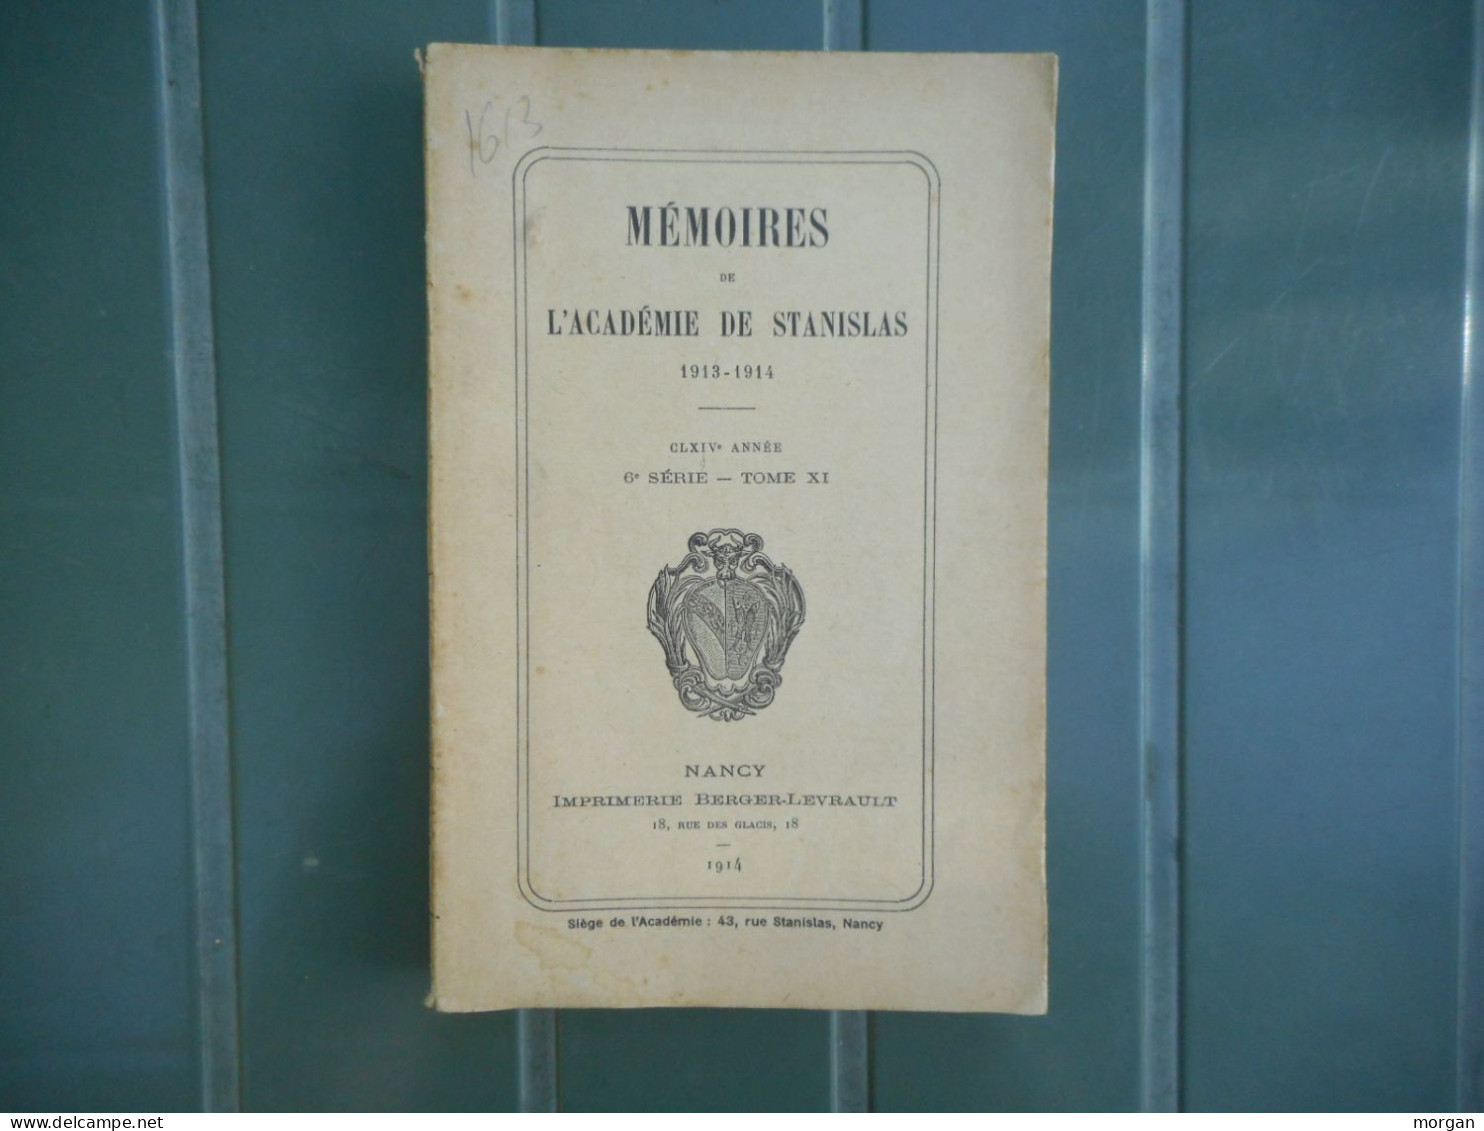 LORRAINE - 1913 / 1914 - MEMOIRES DE L'ACADEMIE DE STANISLAS, SOMMAIRE EN IMAGES, BLAMONT, NANCY - Lorraine - Vosges